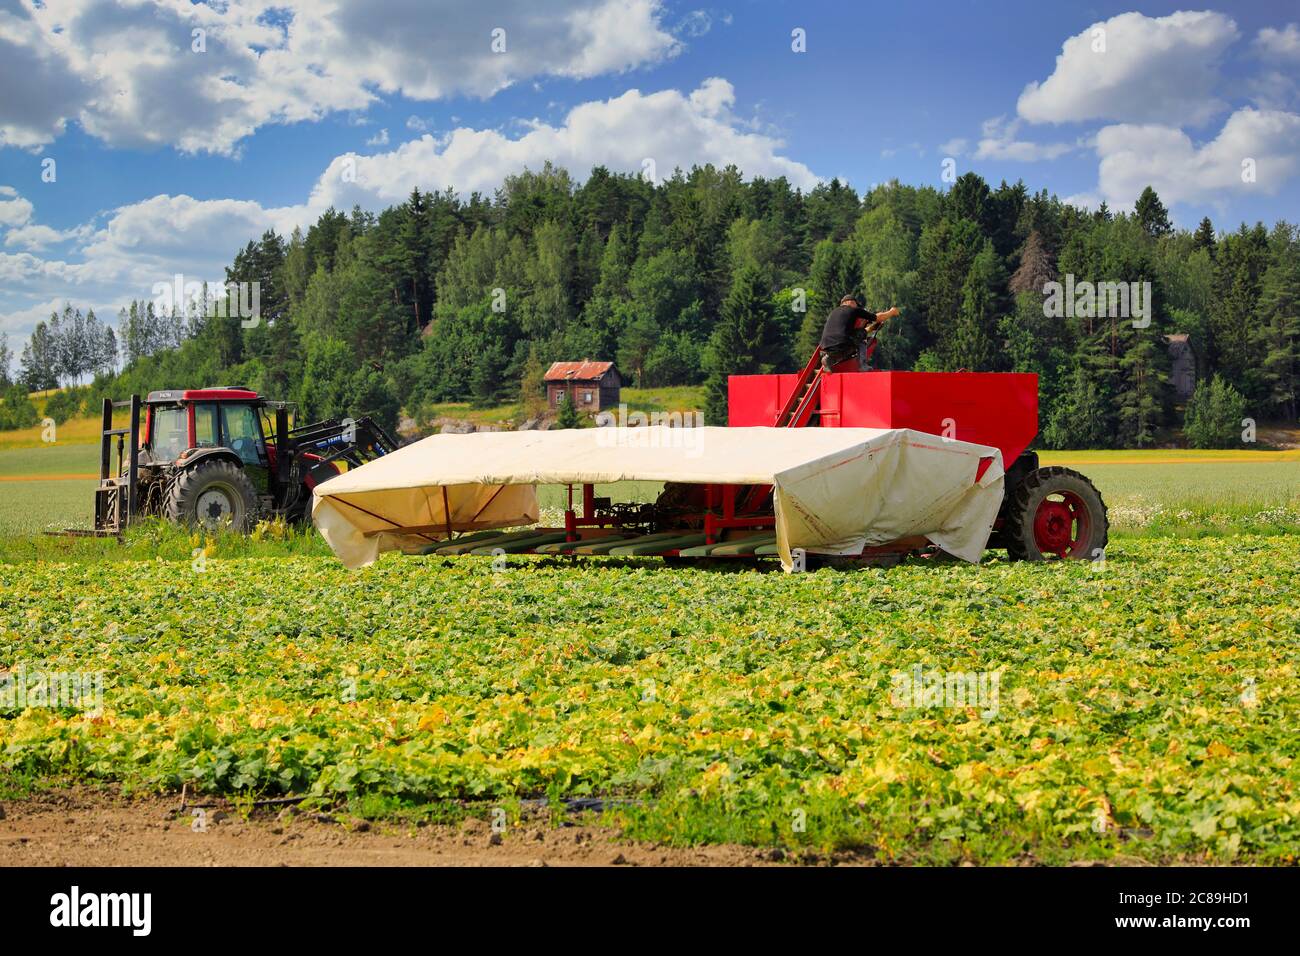 Landwirt Anpassung Gurke Flyer am Rande des Gurkenfeldes an einem schönen Tag im Juli, um die Ernte zu beginnen. Südlich von Finnland. Stockfoto